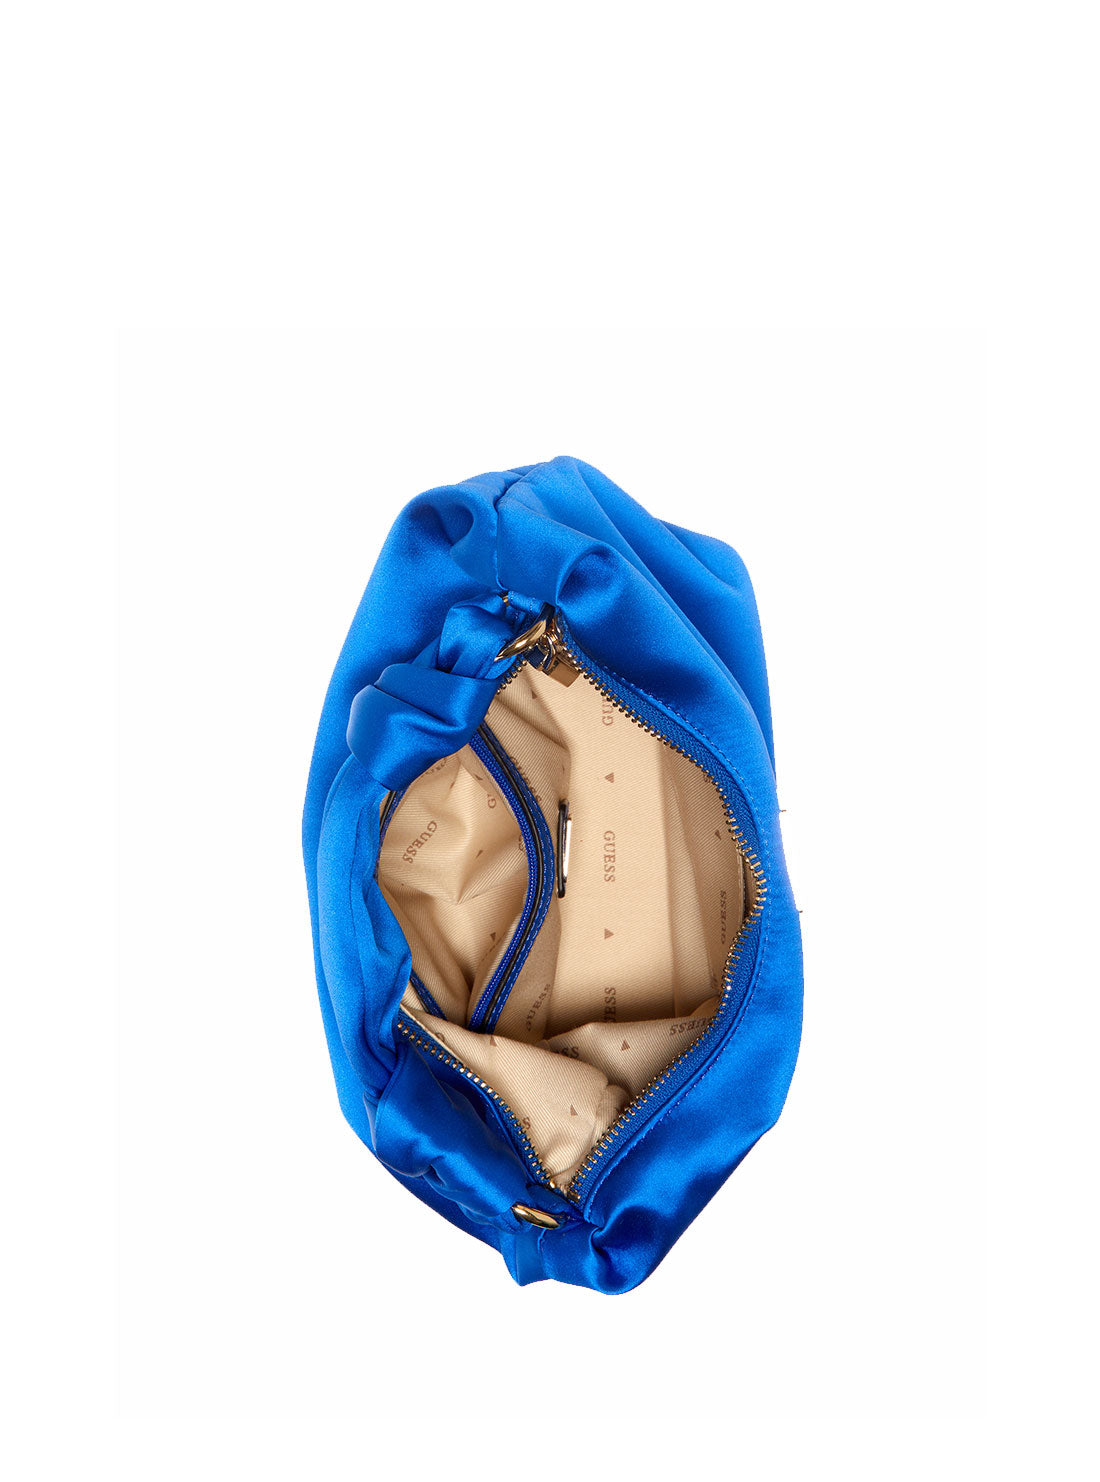 GUESS Women's Blue Velina Hobo Bag EG876502 Inside View